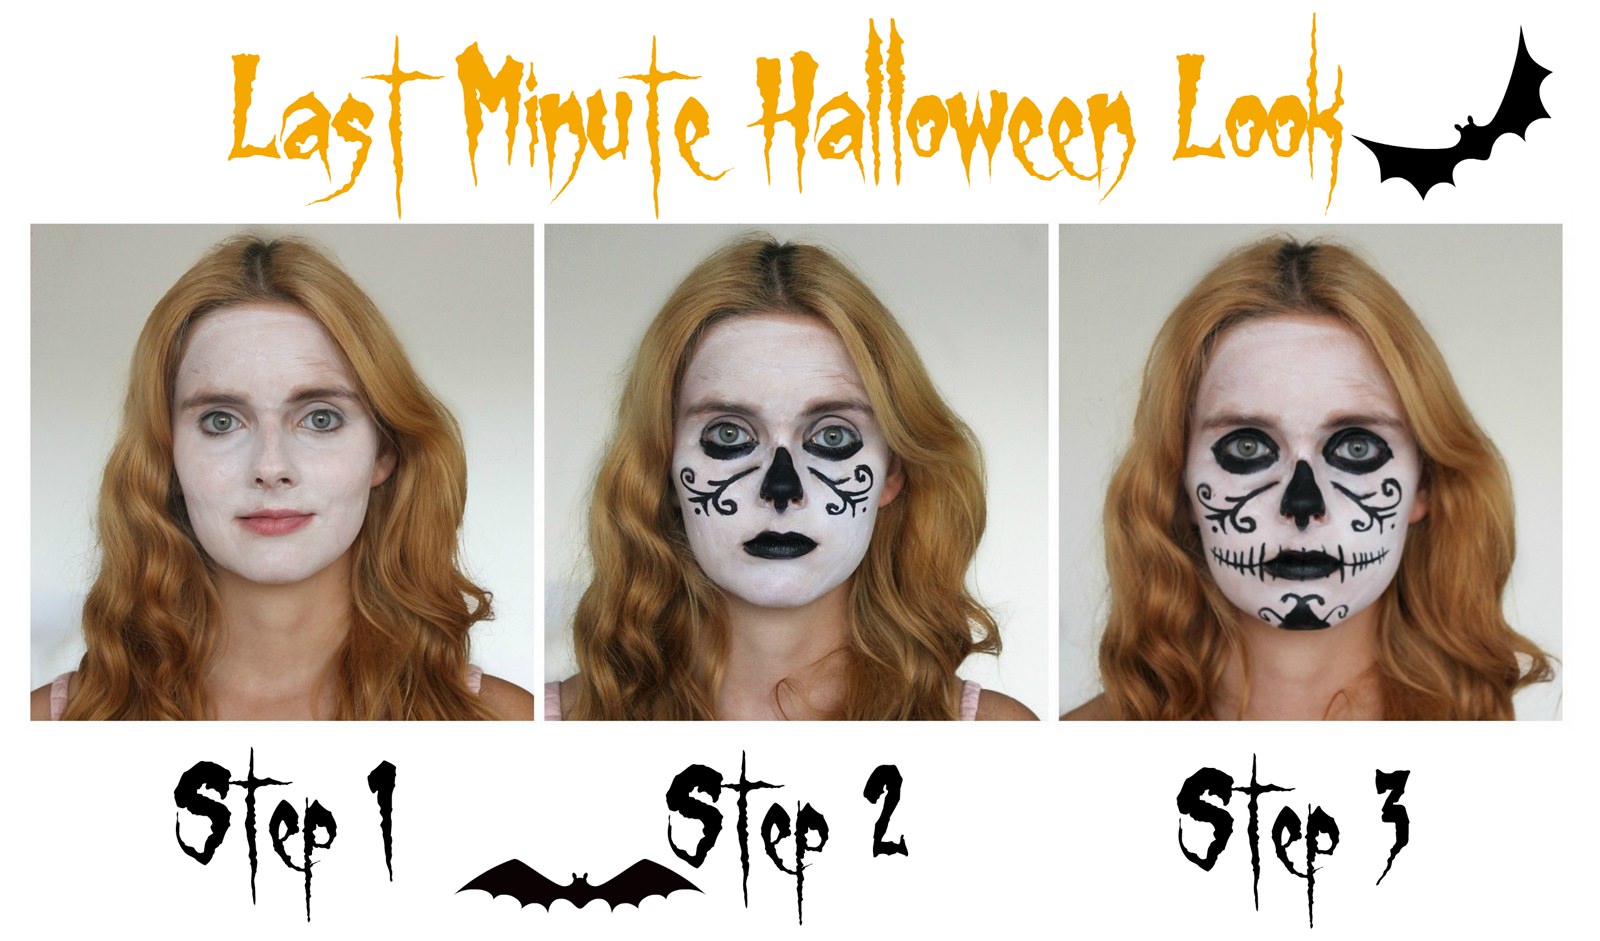 Last Minute Halloween Look Step by Step